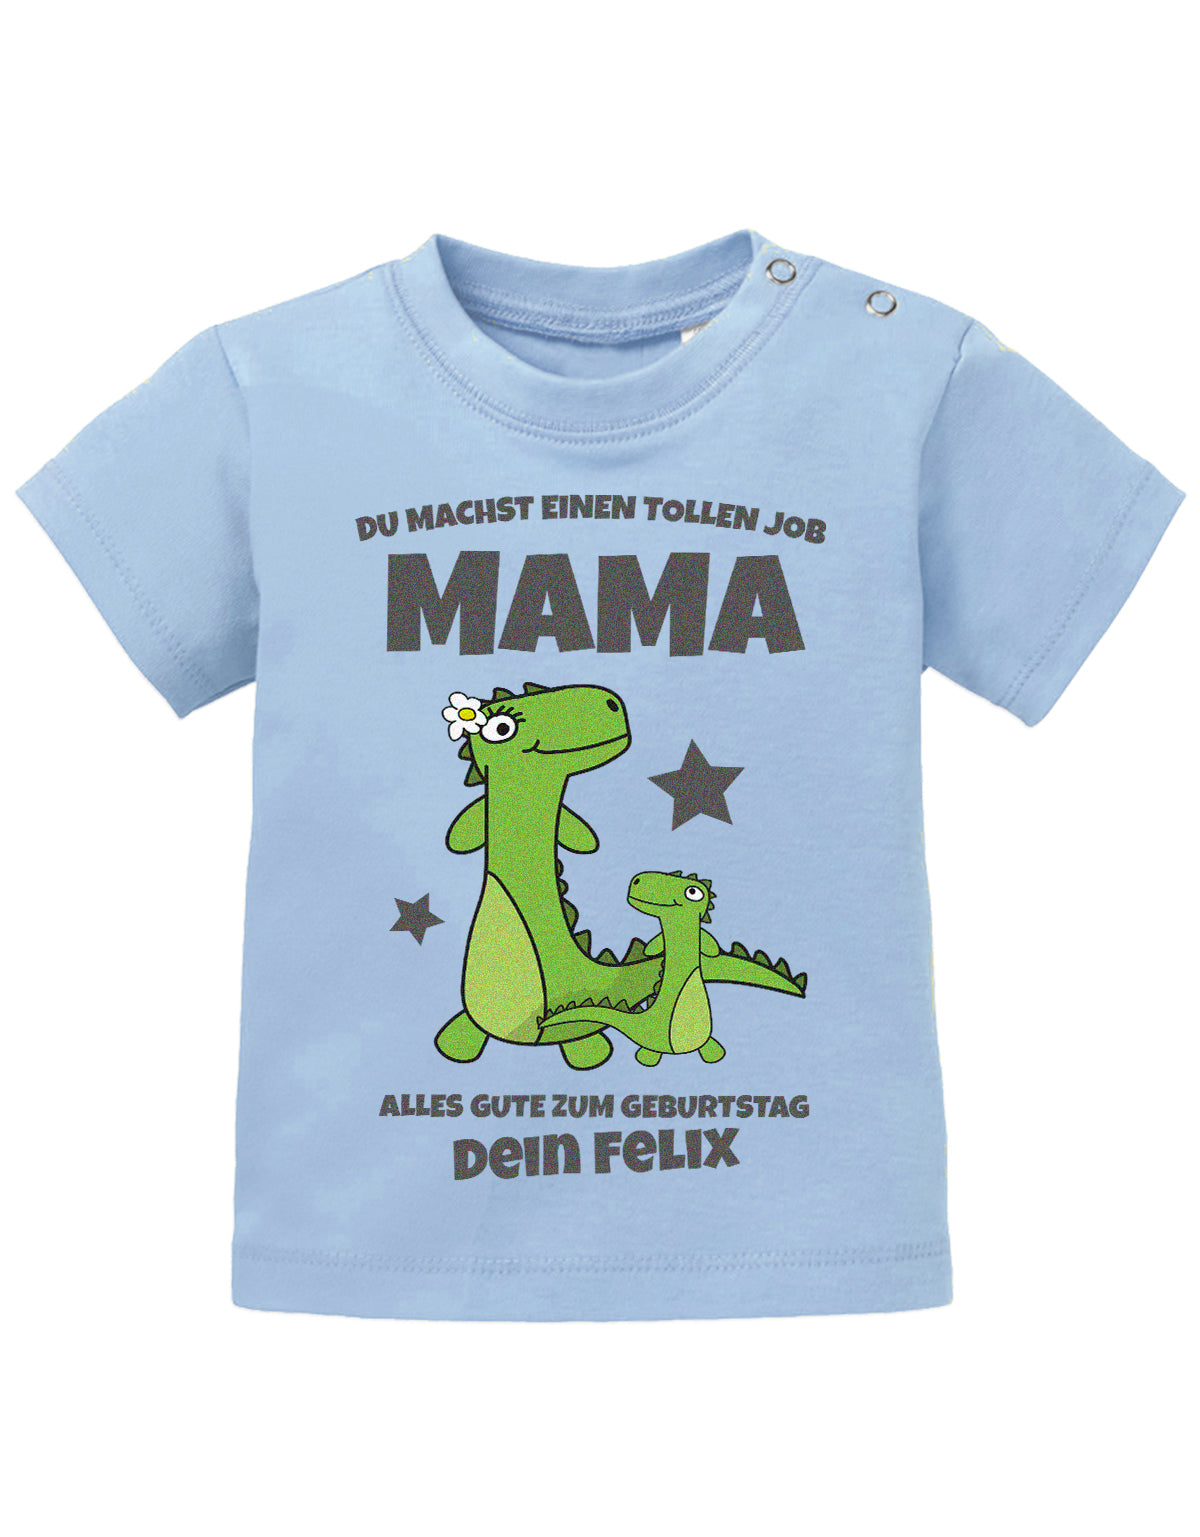 Mama Spruch Baby Shirt. Du machst einen tollen Job, Mama. Alles Gute zum Geburtstag. Personalisiert mit Namen. Hellblau